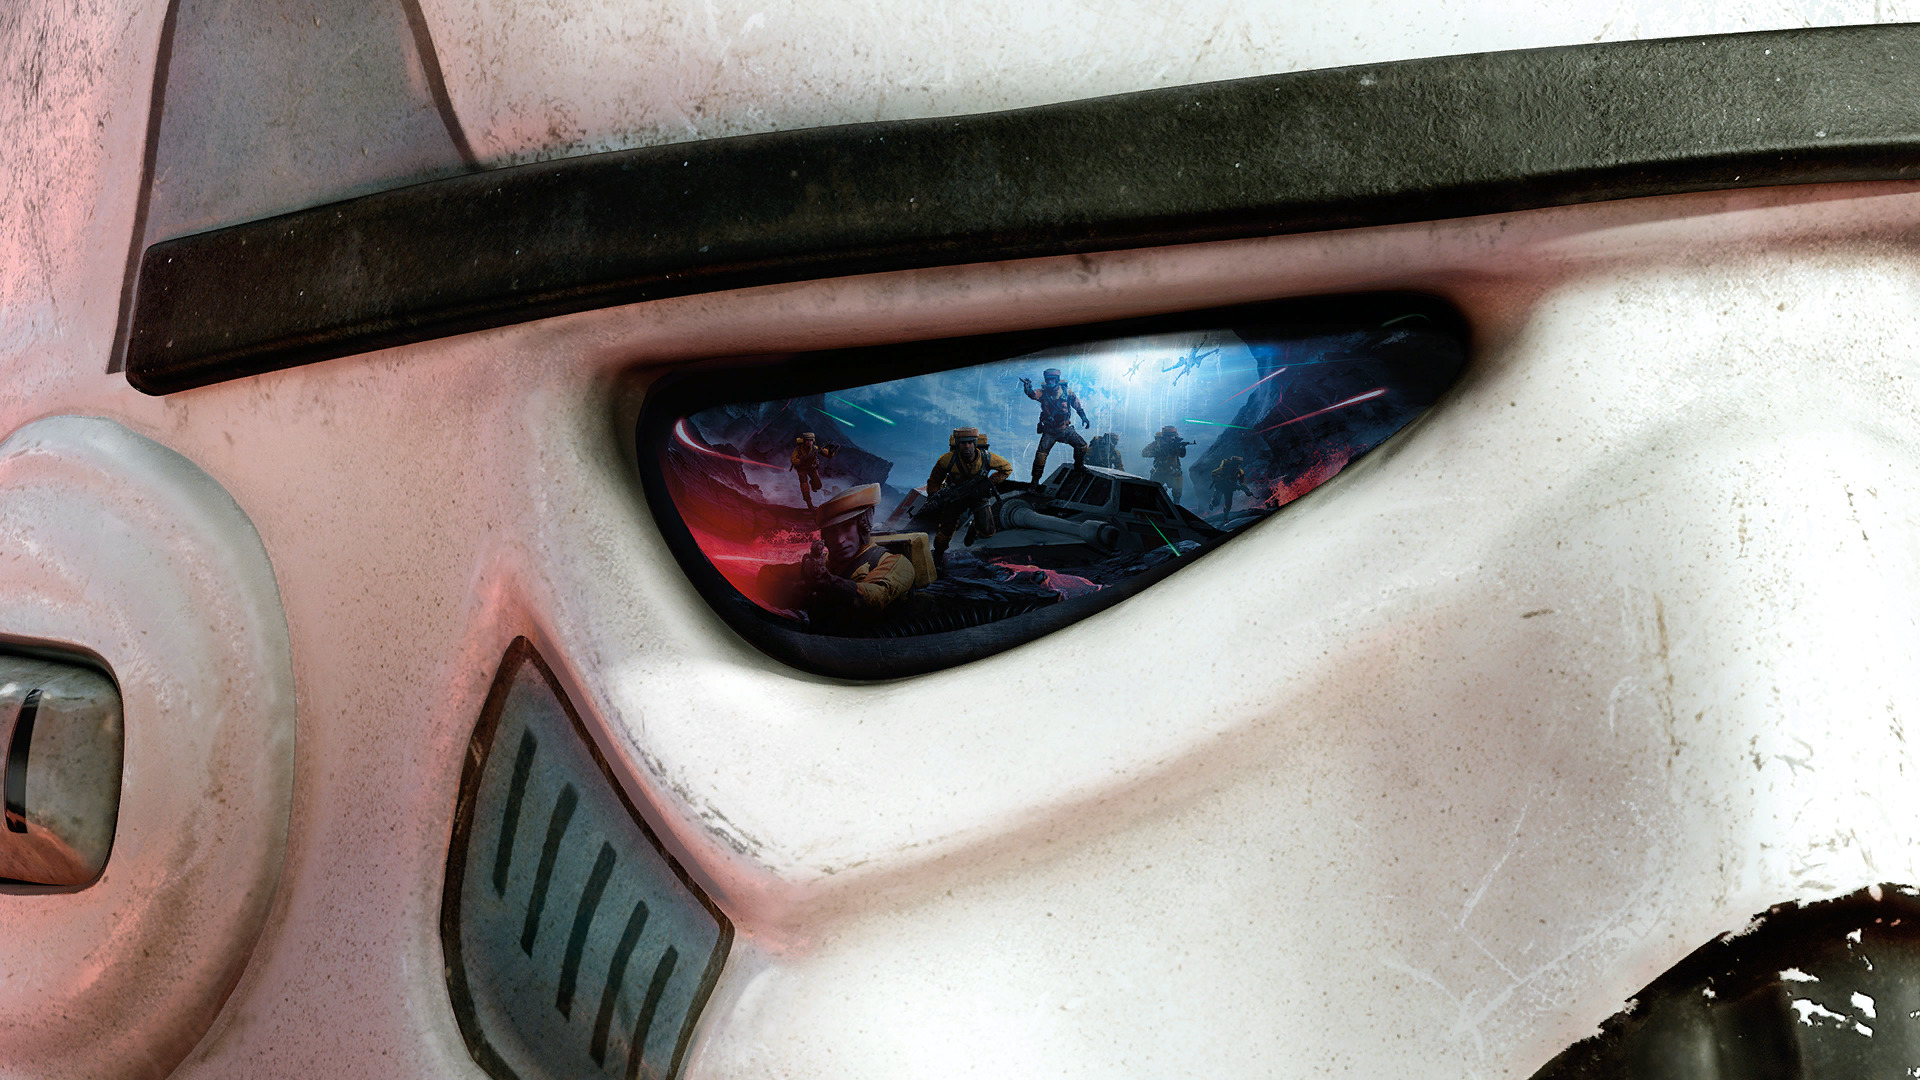 stormtrooper, Star Wars: Battlefront, Closeup, Battle, Reflection, Video Games Wallpaper